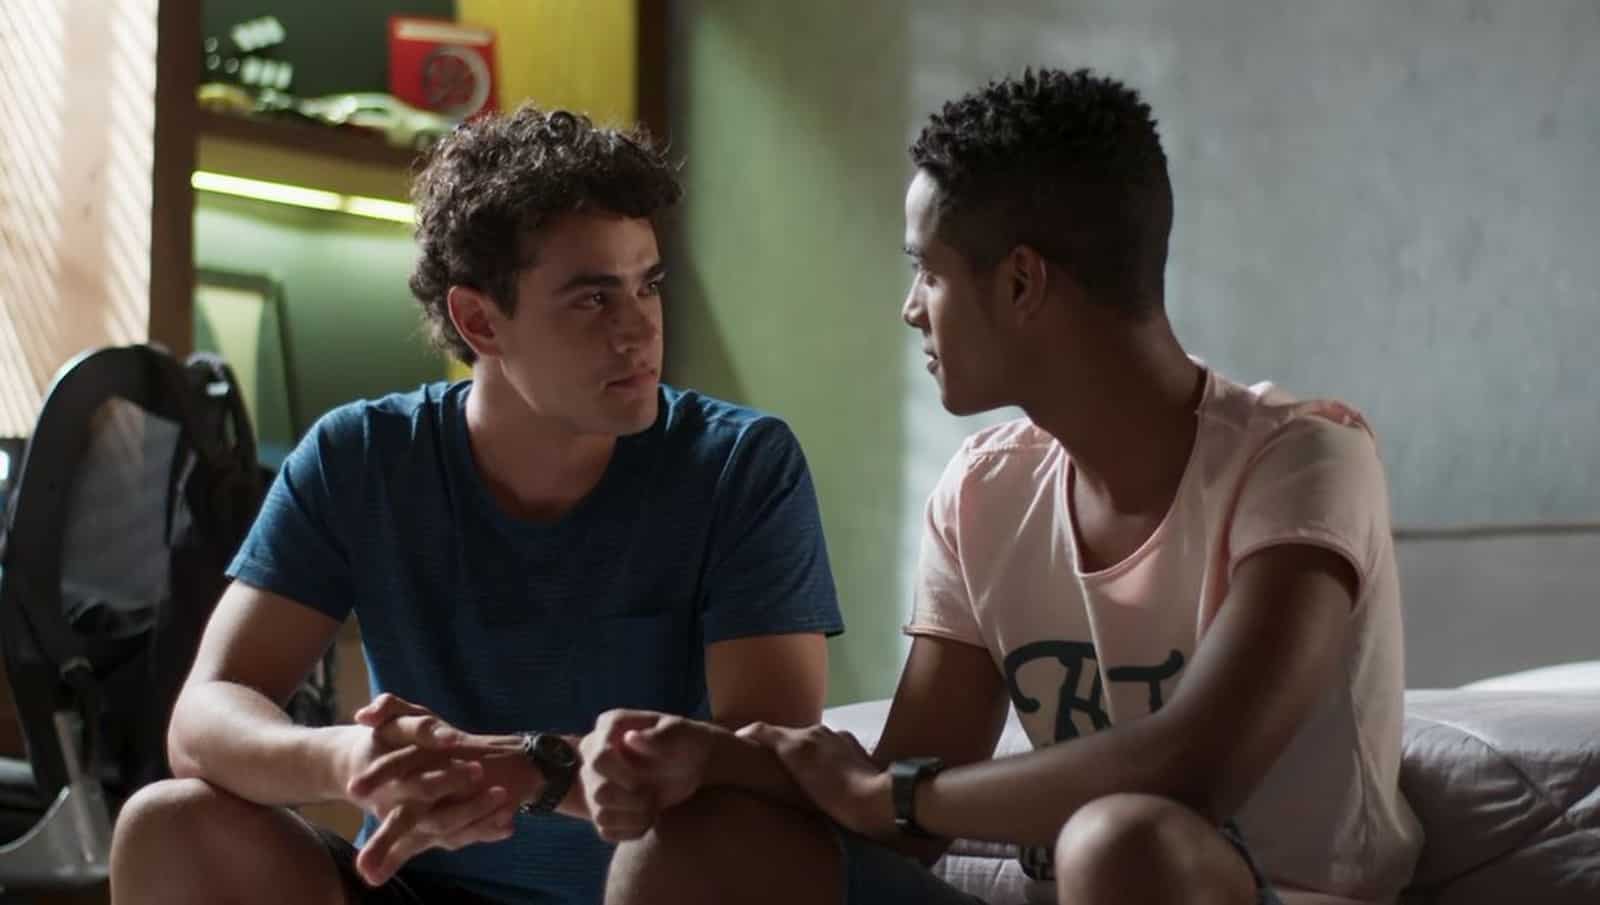 Equipe de “Malhação” teme veto da Globo em cena de beijo entre homens